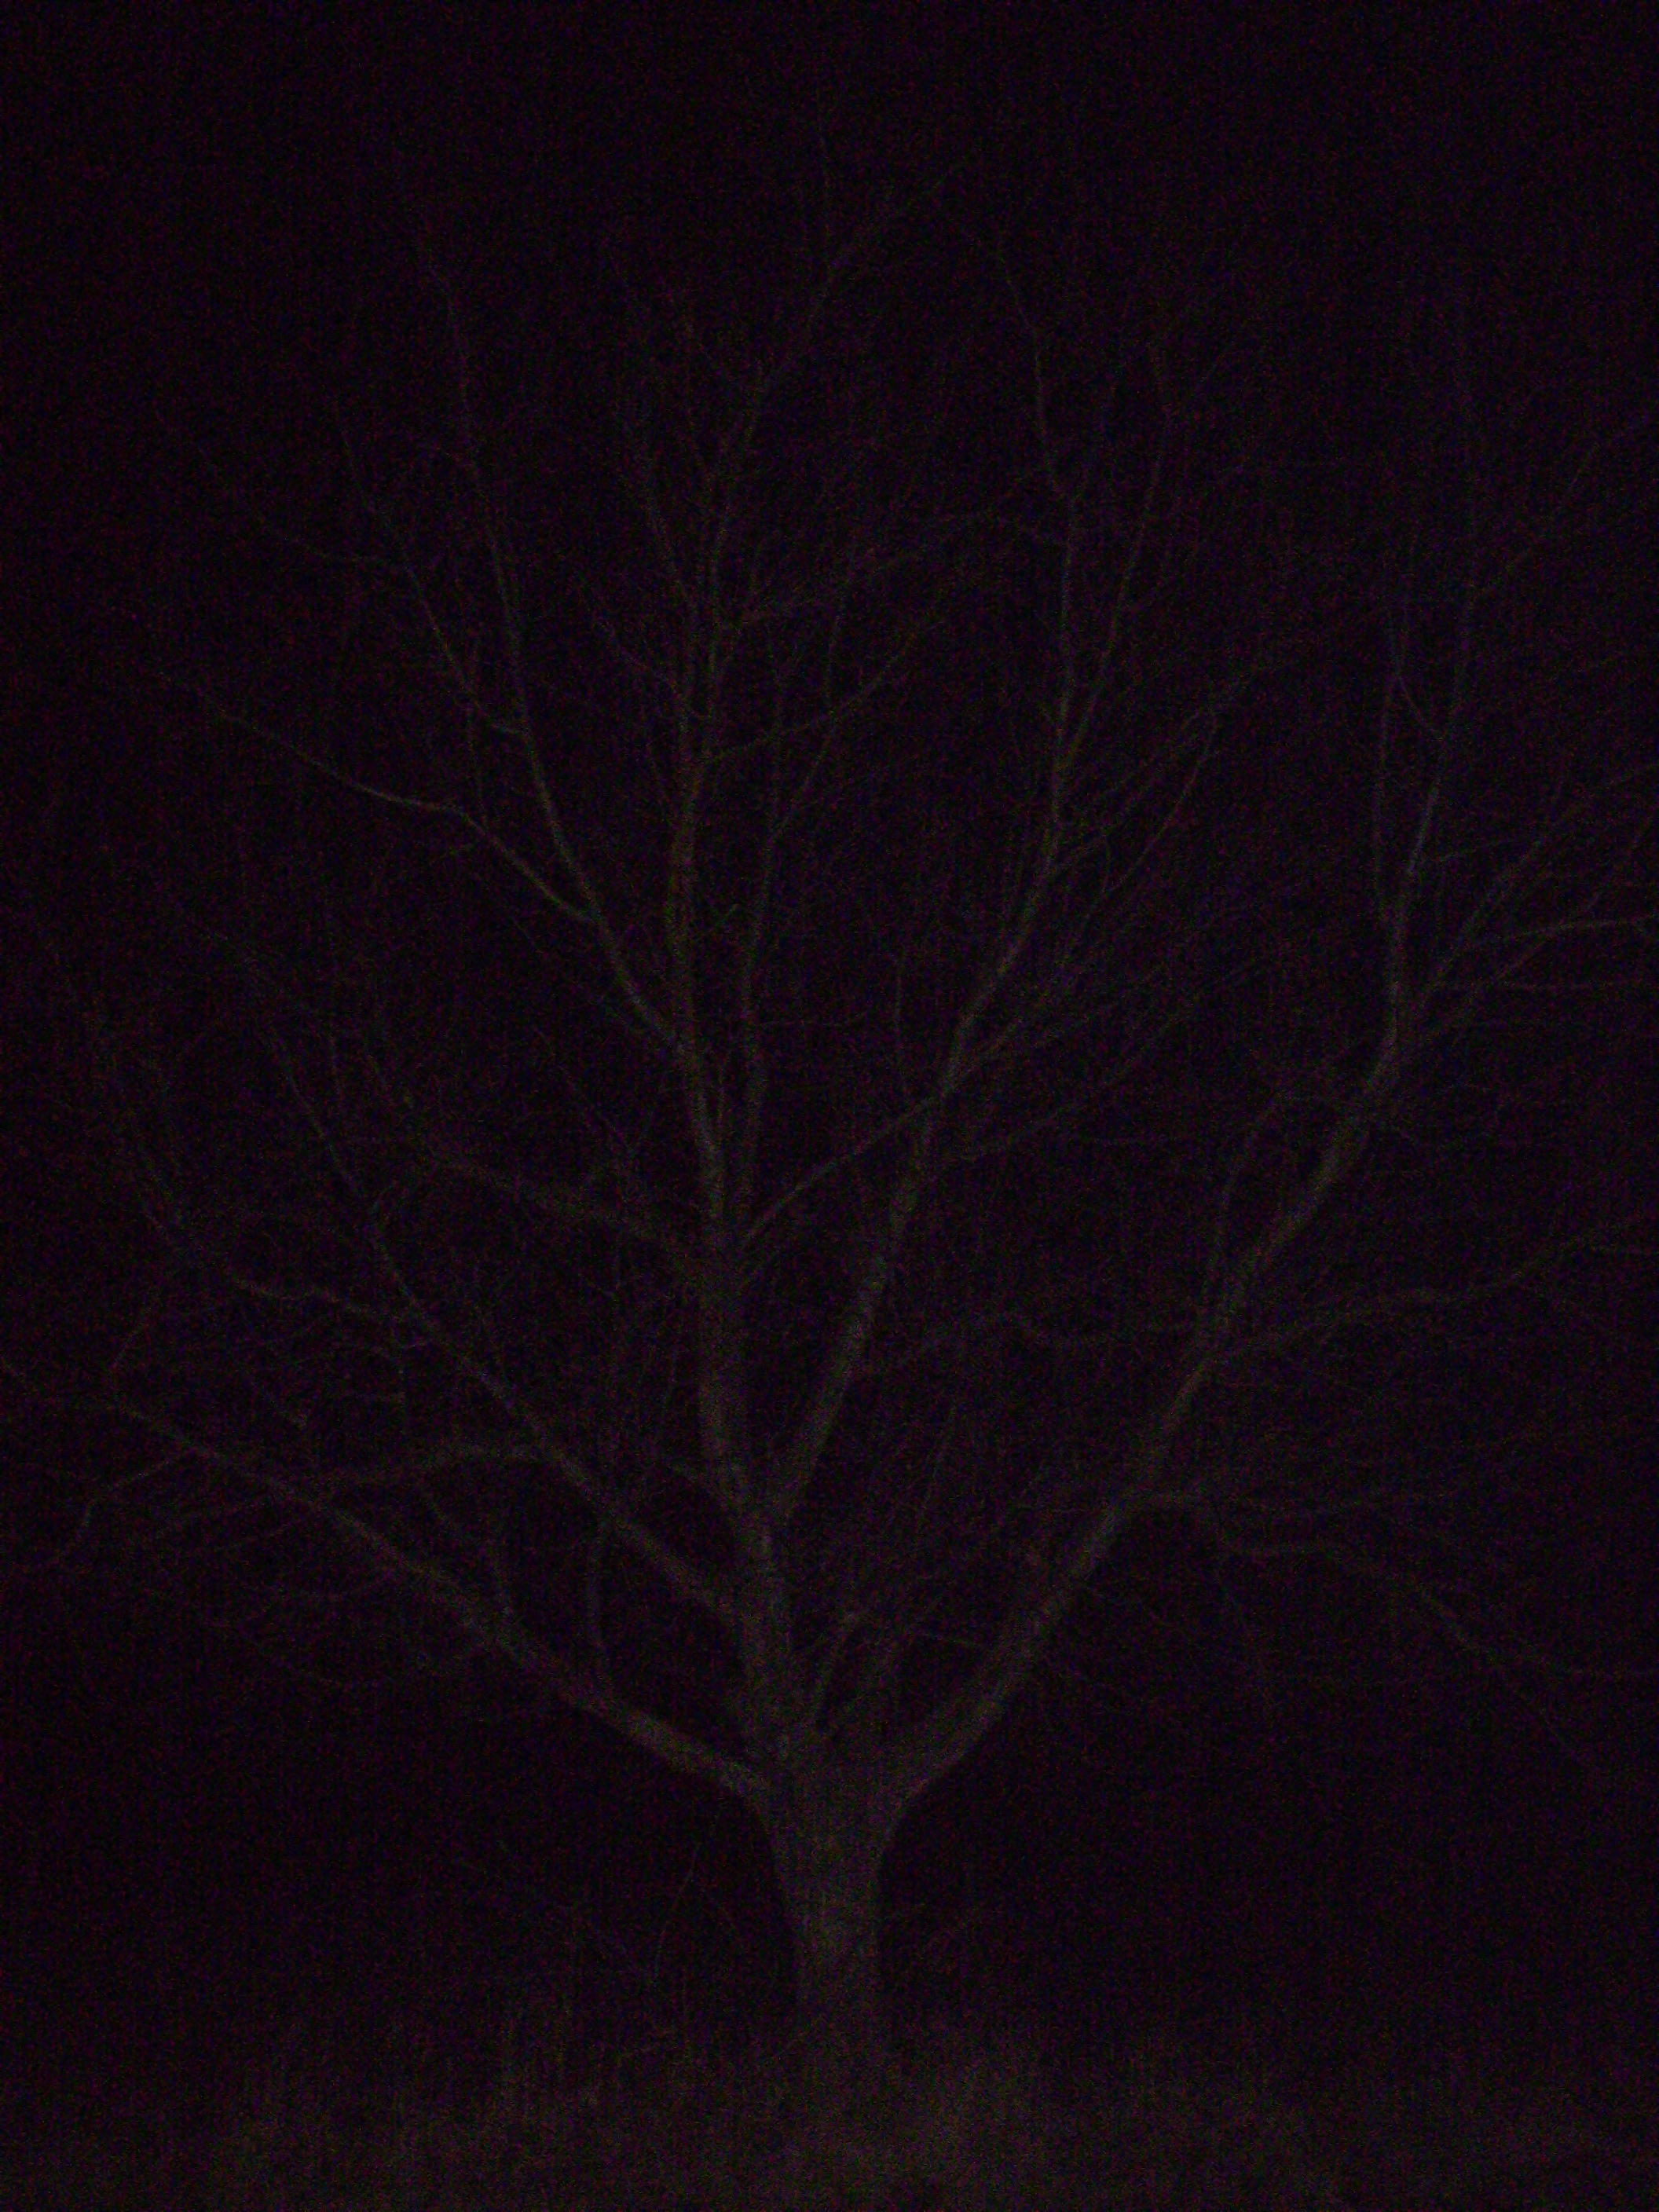 stromy su v noci krasne!